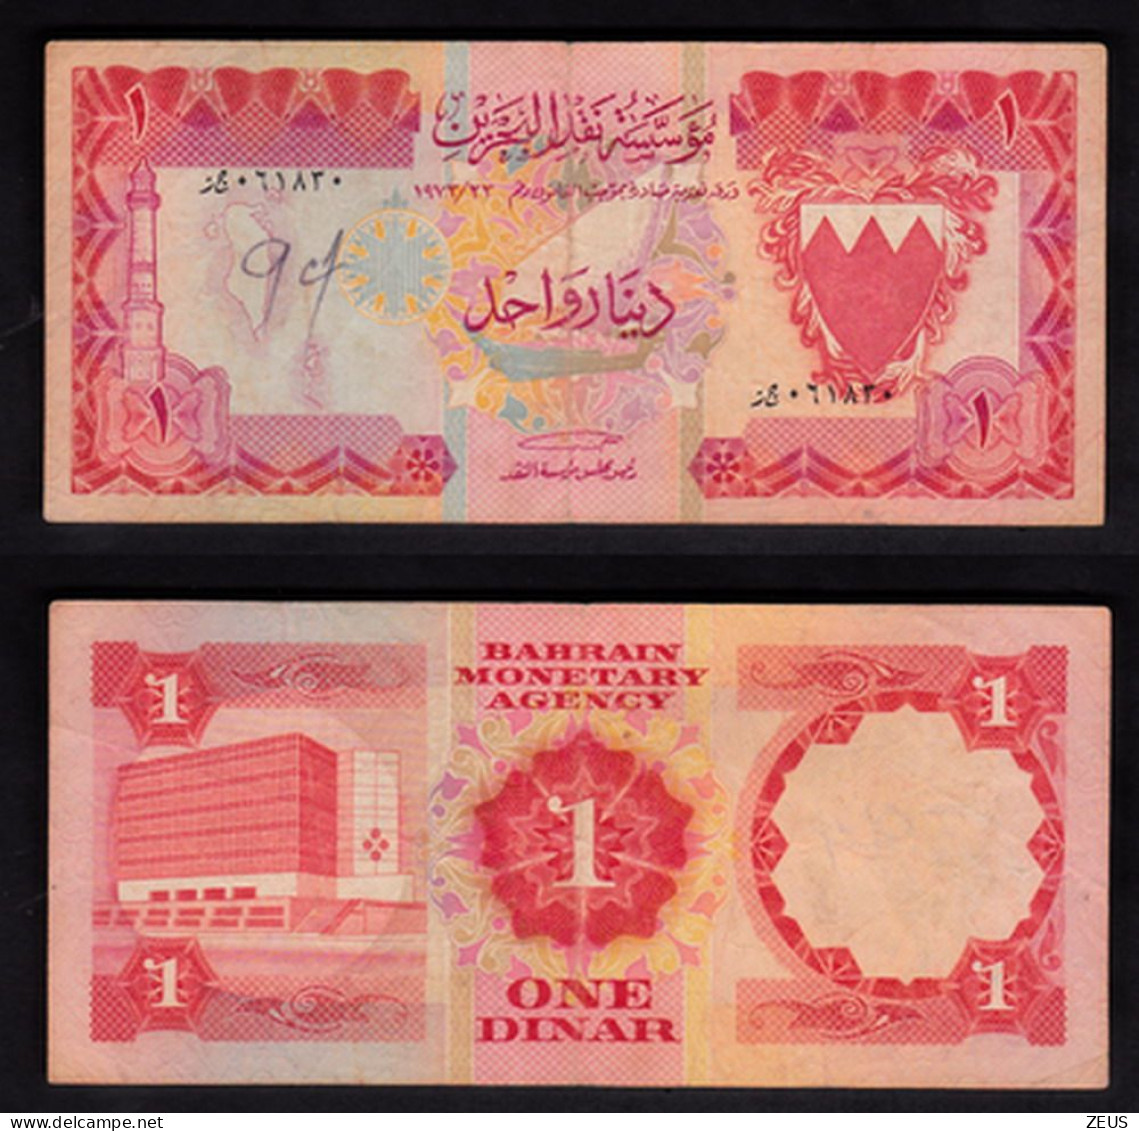 BAHREIN 1 DINARO 1973 PIK 8 - Bahrein